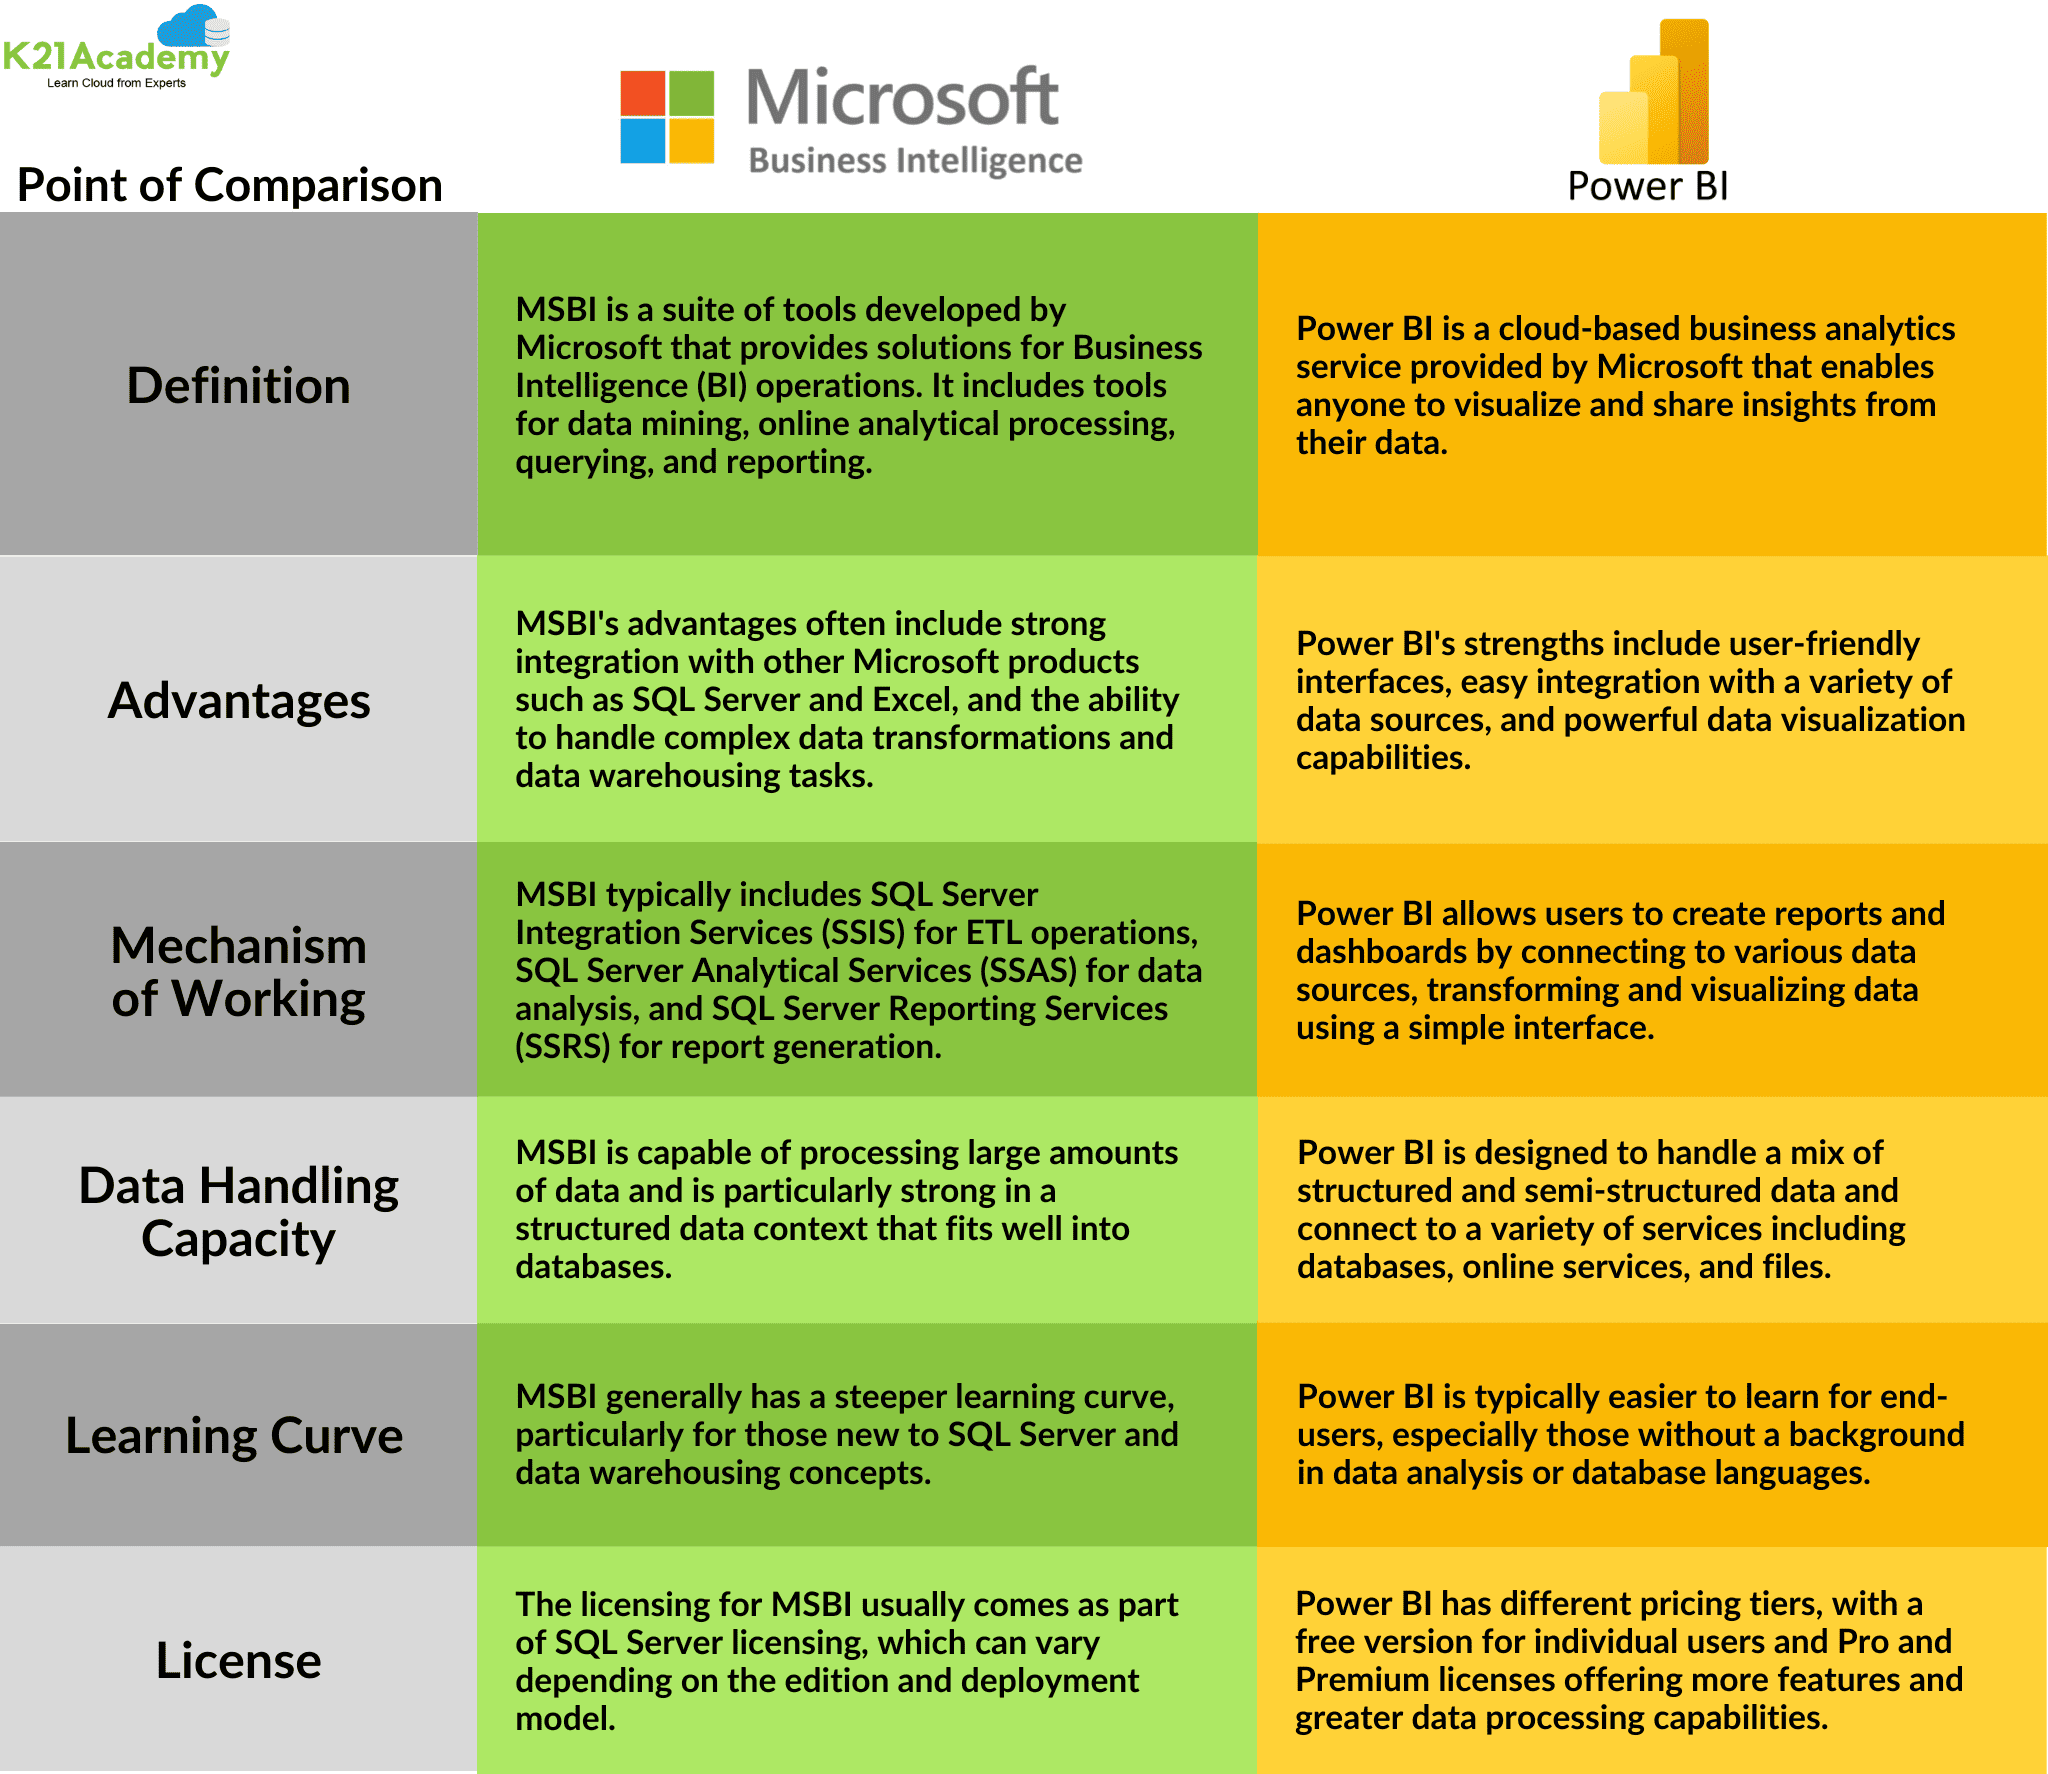 Microsoft vs Power BI